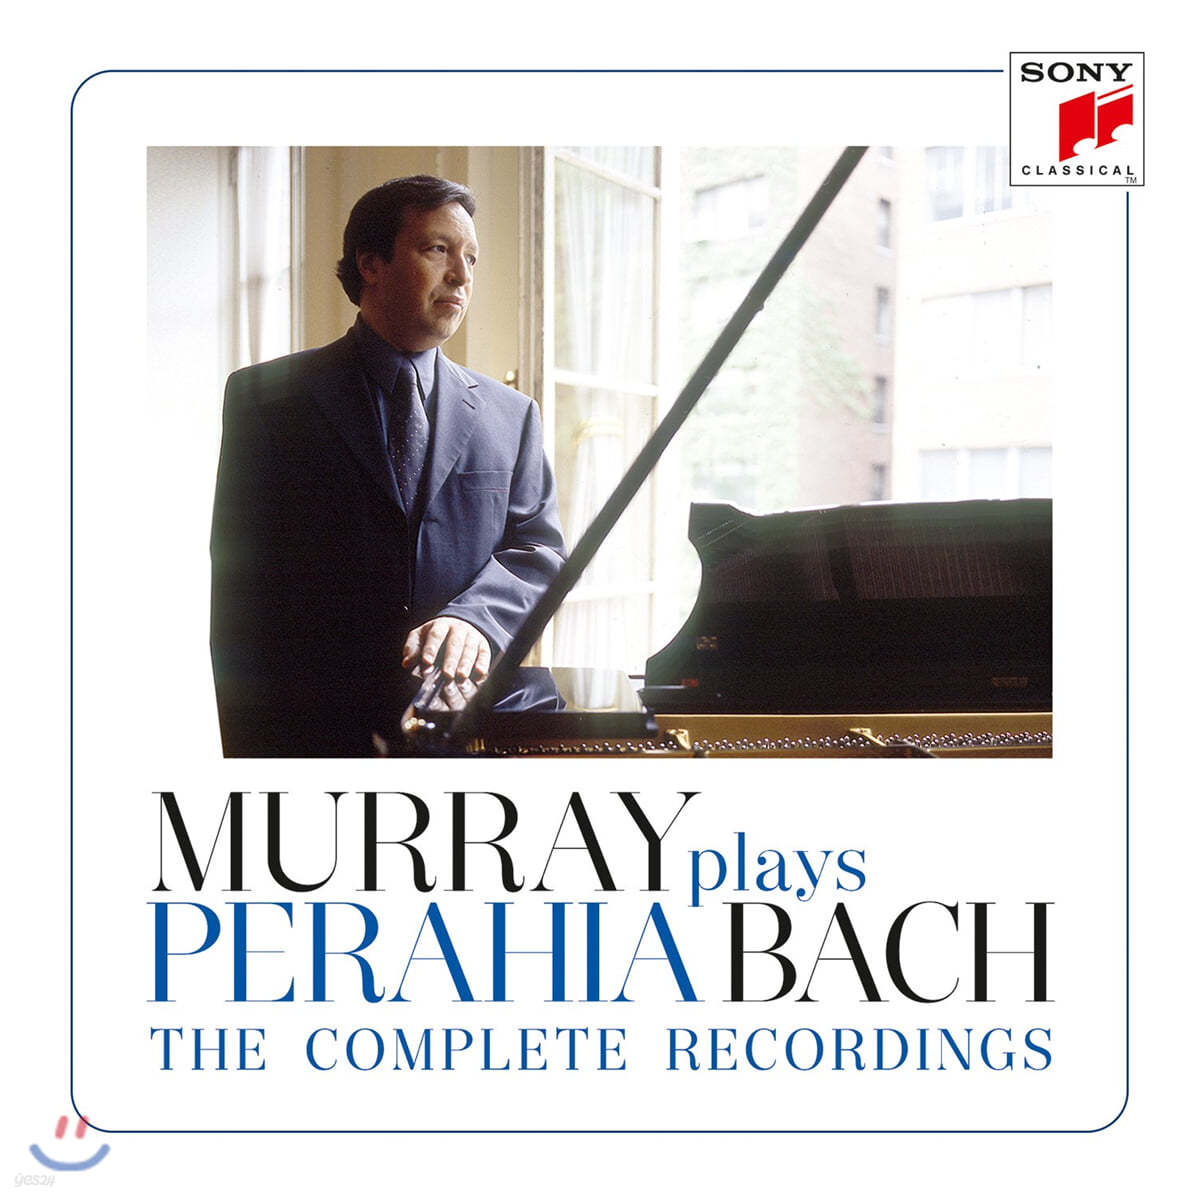 머레이 페라이어가 연주하는 바흐 소니 레코딩 전집 (Murray Perahia Plays Bach - The Complete Sony Recordings)